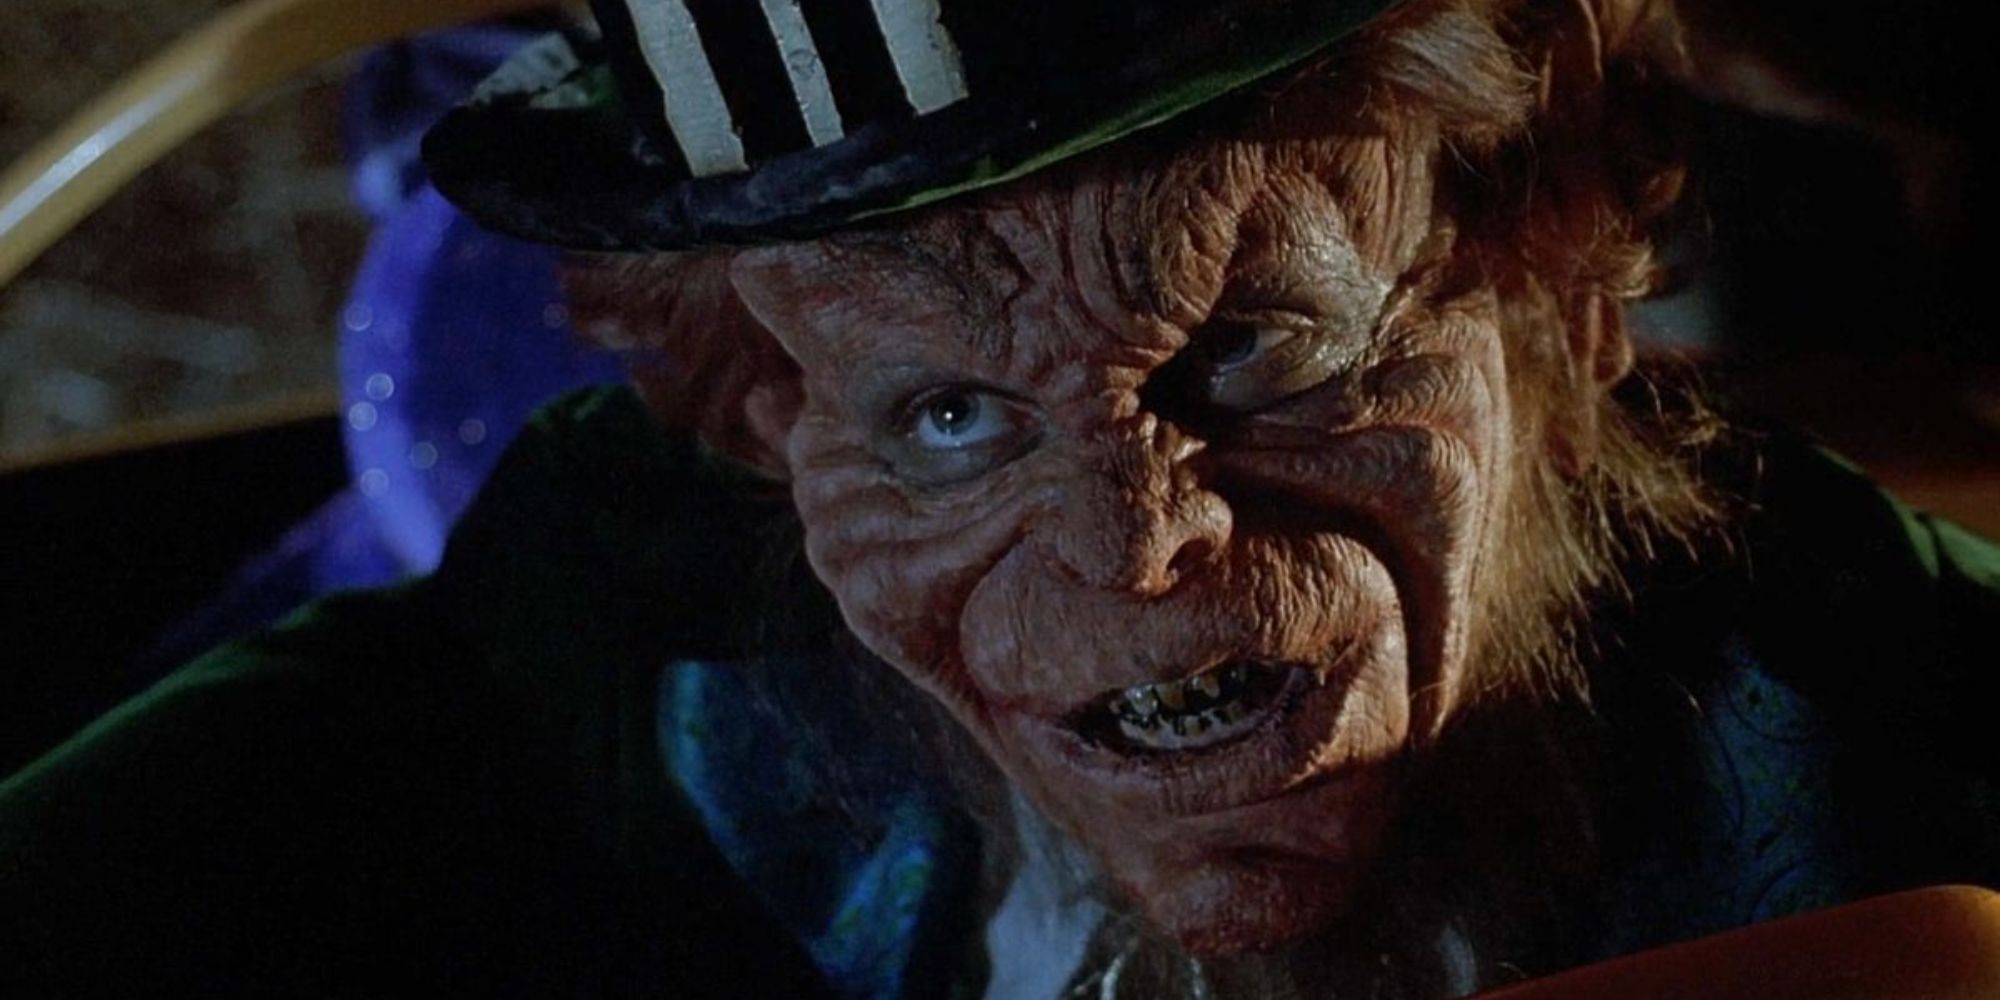 Horror dos anos 90-Leprechaun olhando para a câmera com um chapéu verde